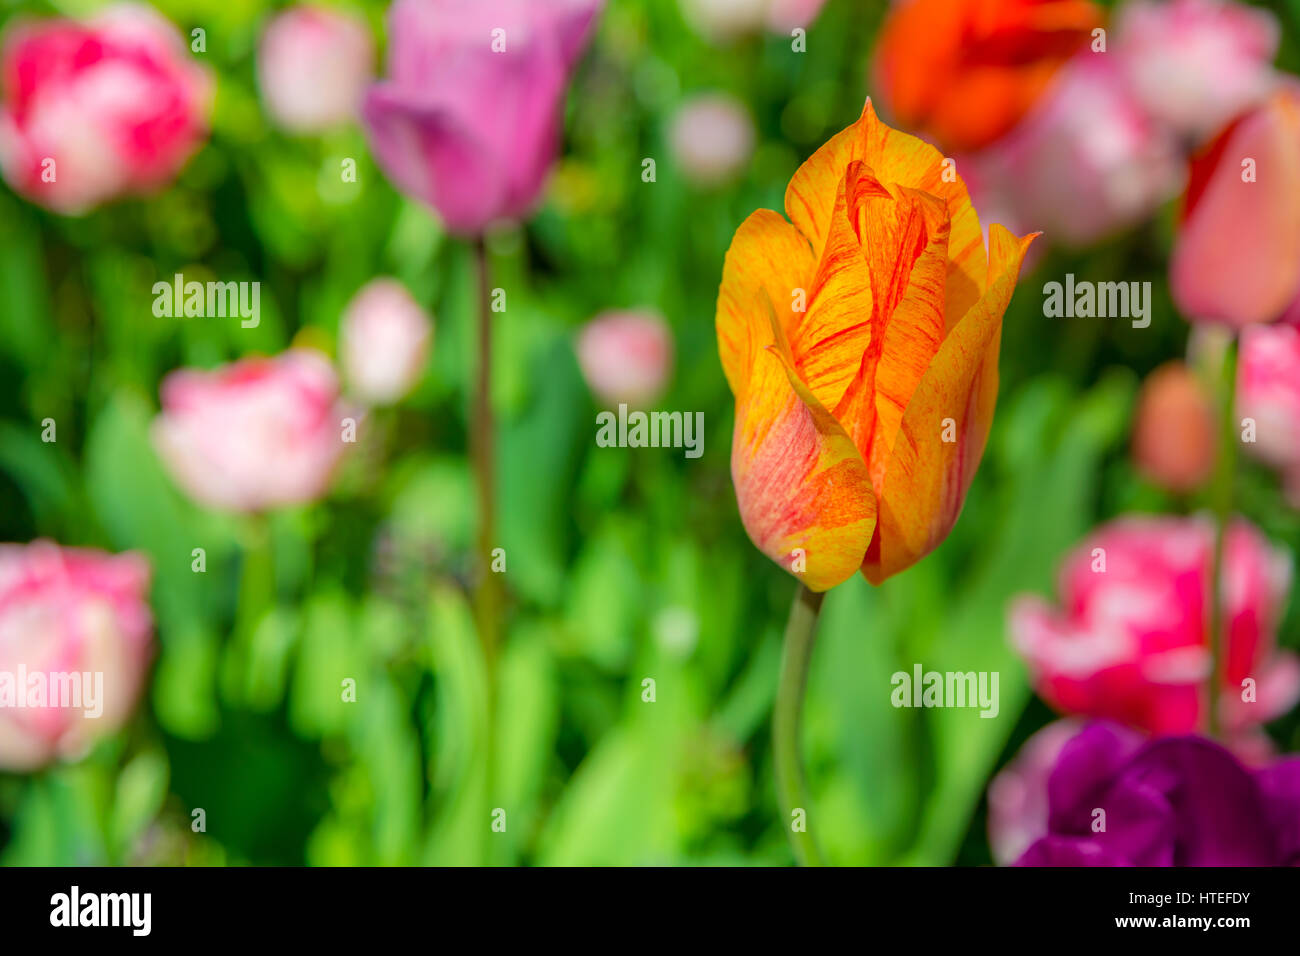 Tulip. Un tulip au milieu d'un champ vert. Tulipe jaune sur le parterre. Jardin de Keukenhof, Pays-Bas. Tulipes fleurs floraison printanière dans le gard Banque D'Images